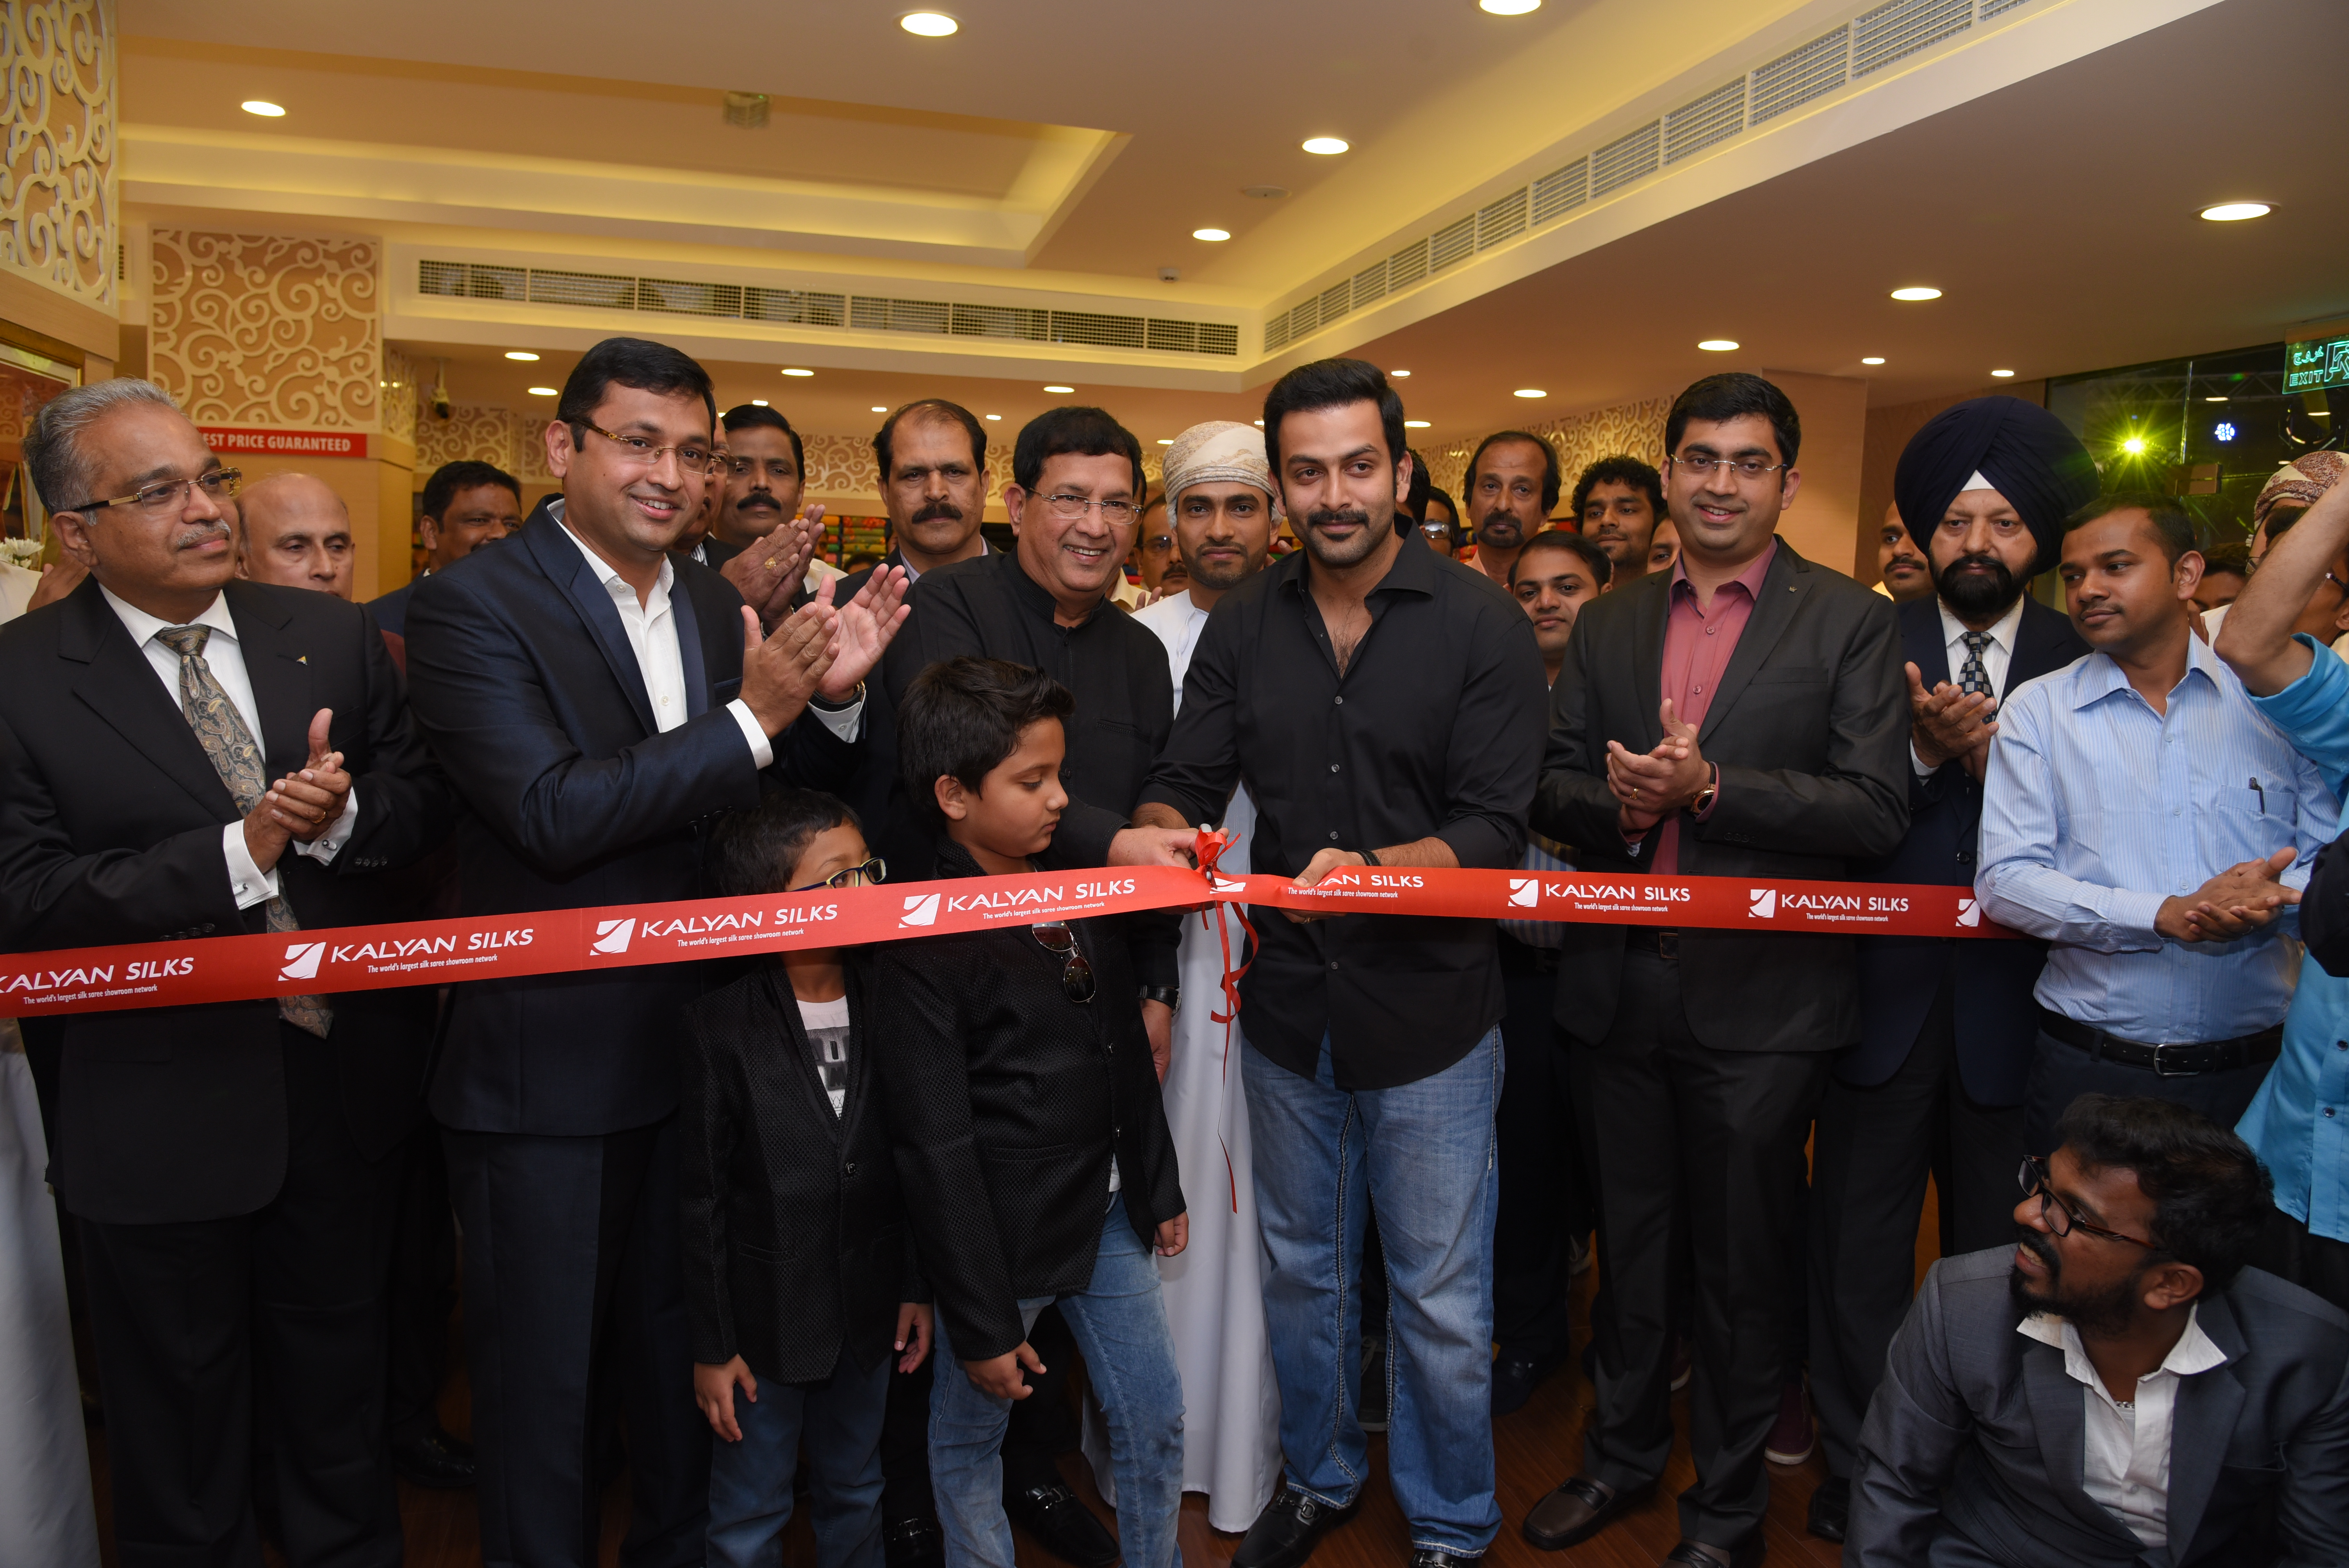 Kalyan Silks opens showroom in Muscat - Times of Oman